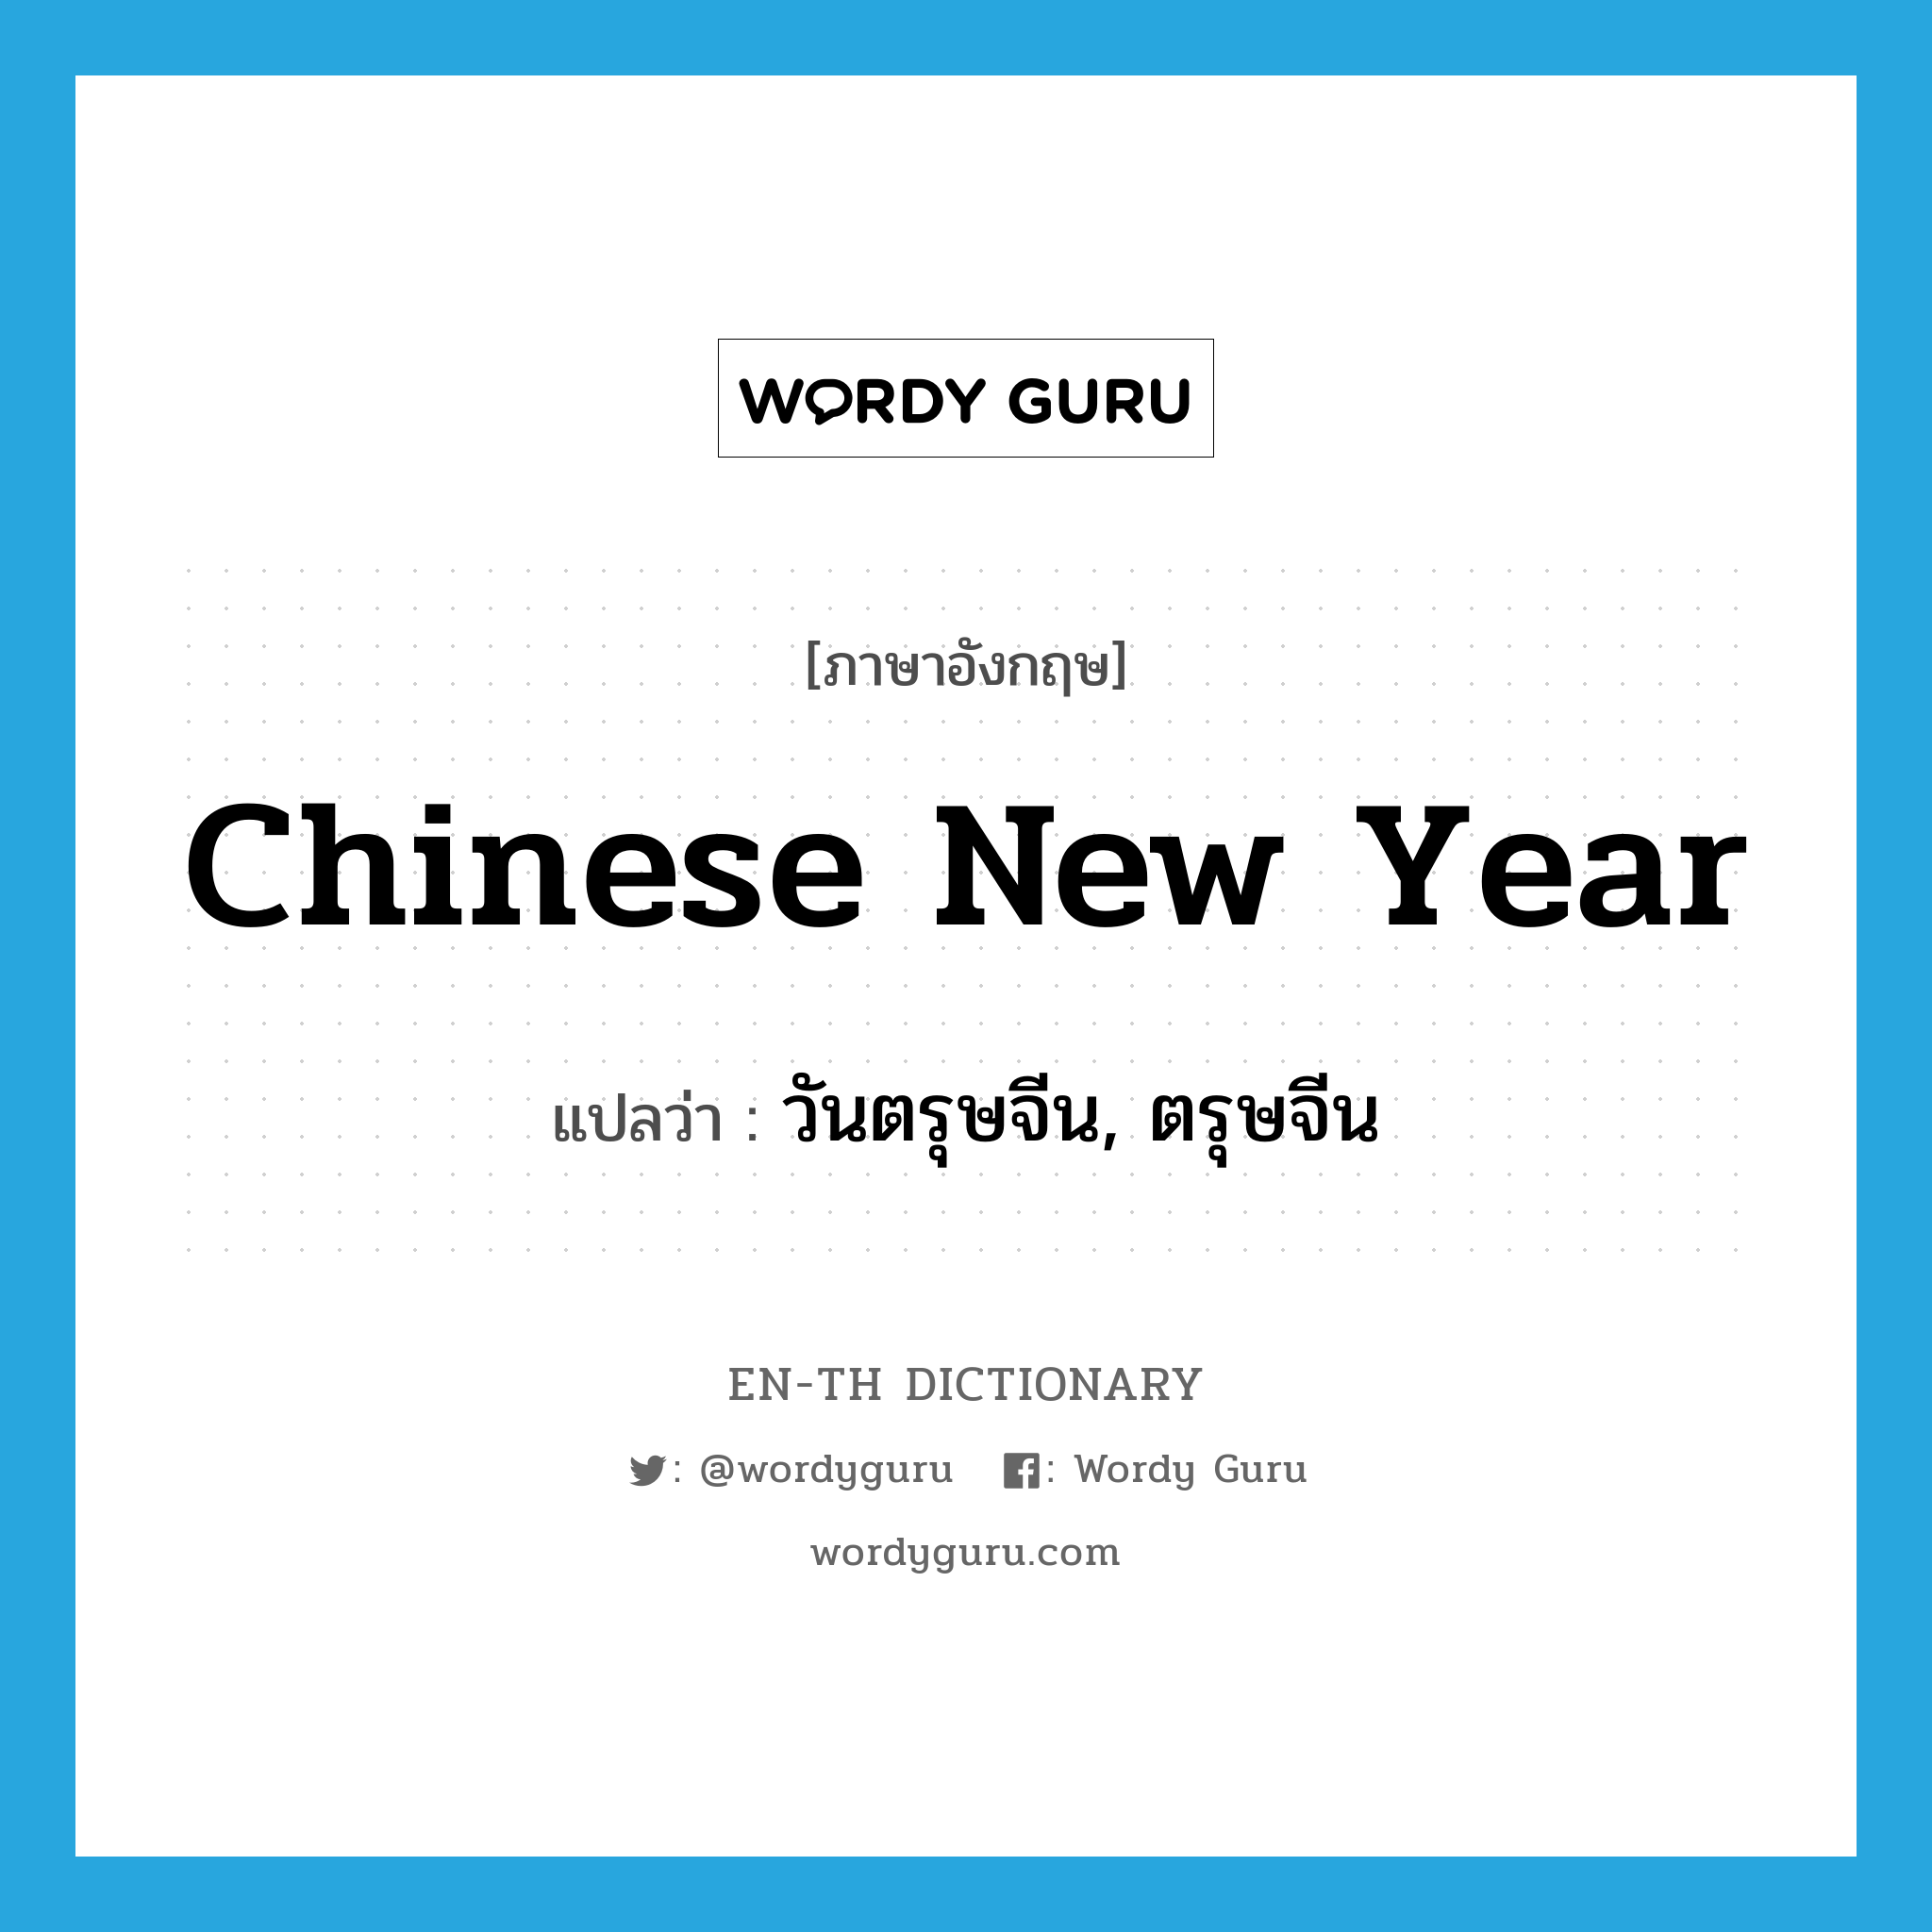 วันตรุษจีน, ตรุษจีน ภาษาอังกฤษ?, คำศัพท์ภาษาอังกฤษ วันตรุษจีน, ตรุษจีน แปลว่า Chinese New Year ประเภท N หมวด N